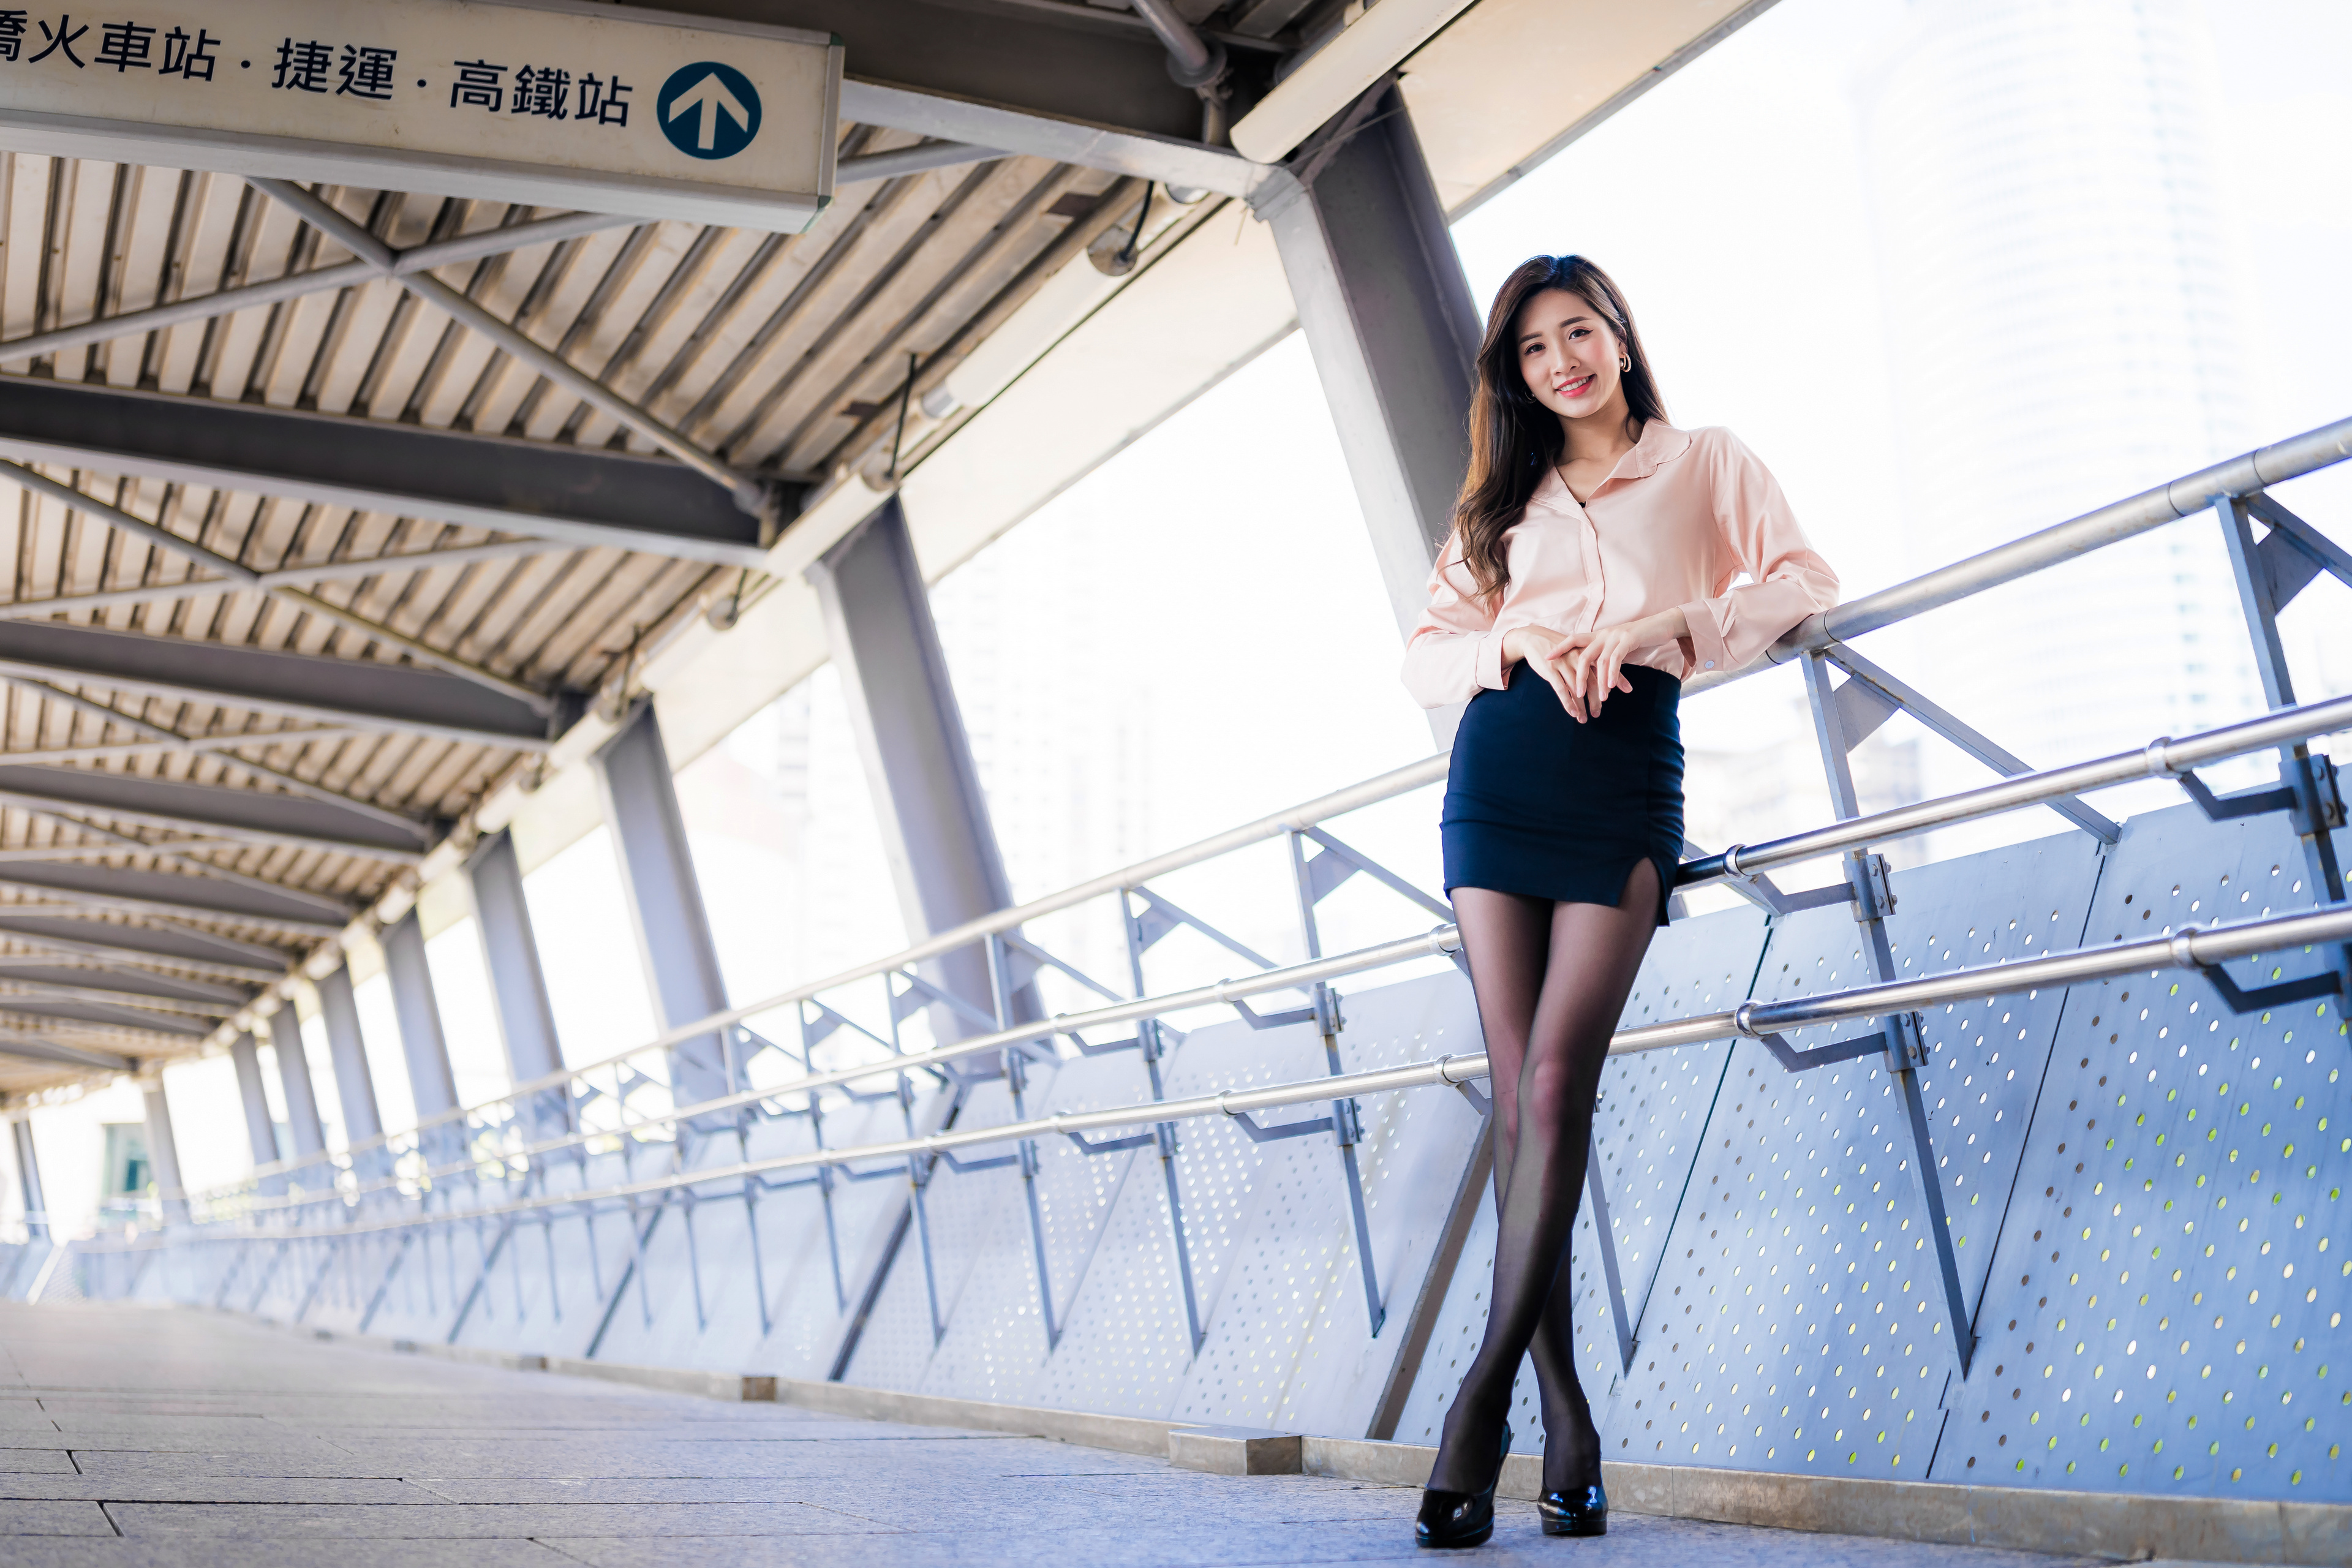 Asian Model Women Long Hair Dark Hair Blouse Black Skirts Nylons Black Heels Leaning Railings Passag 3840x2560